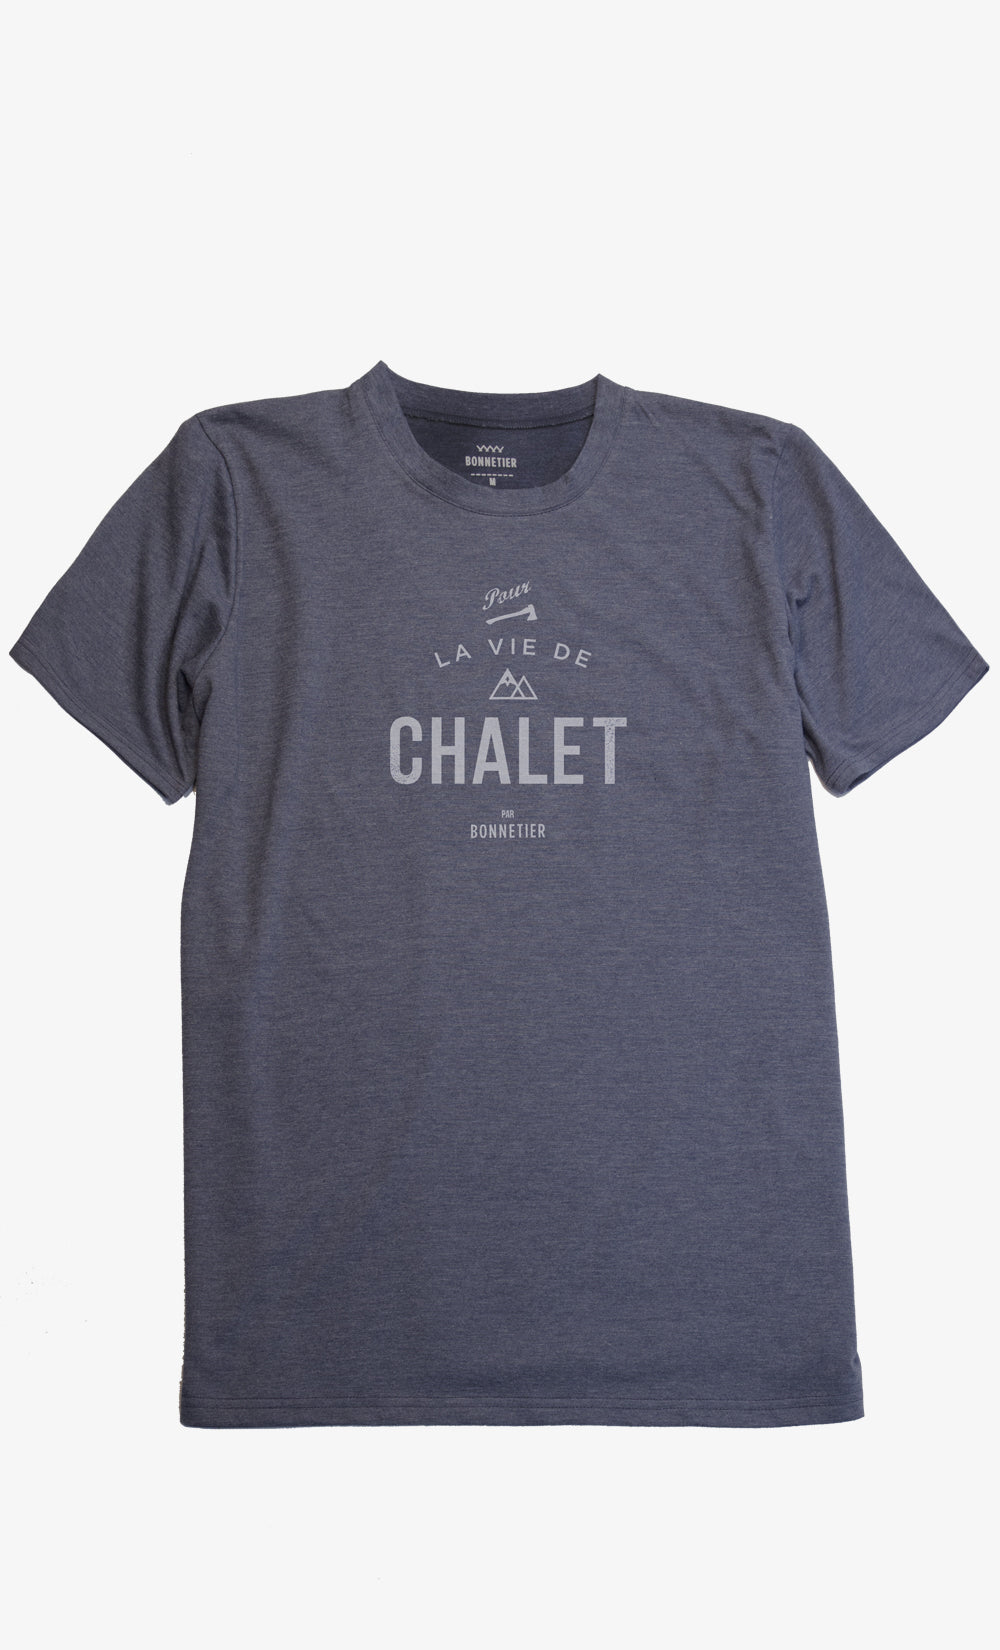 T-Shirt Homme Charbon - Chalet